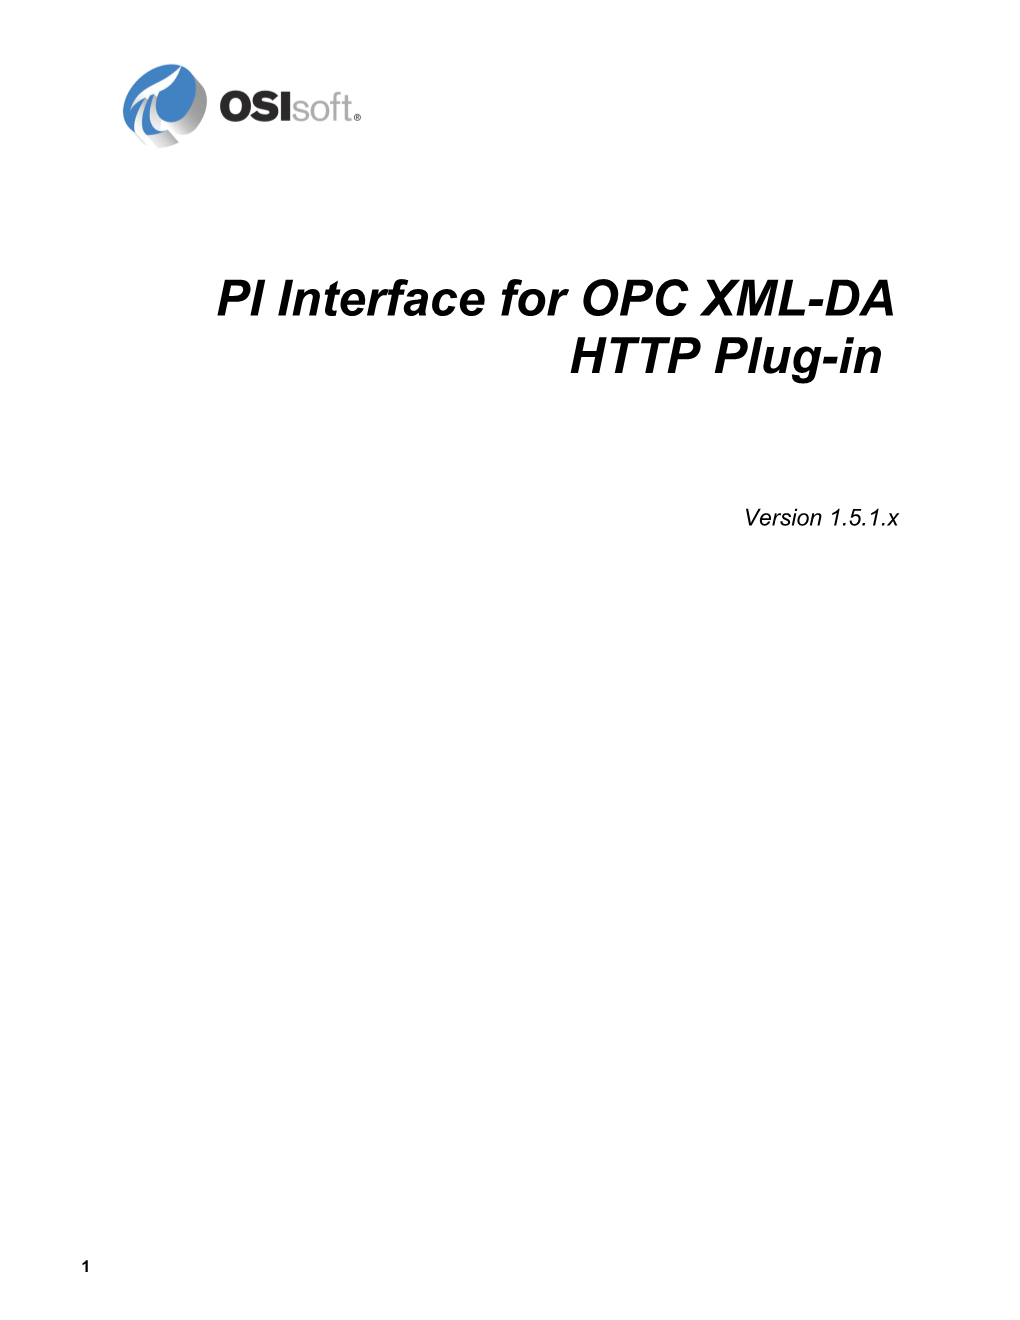 PI Interface for OPC XML-DA HTTP Plug-In